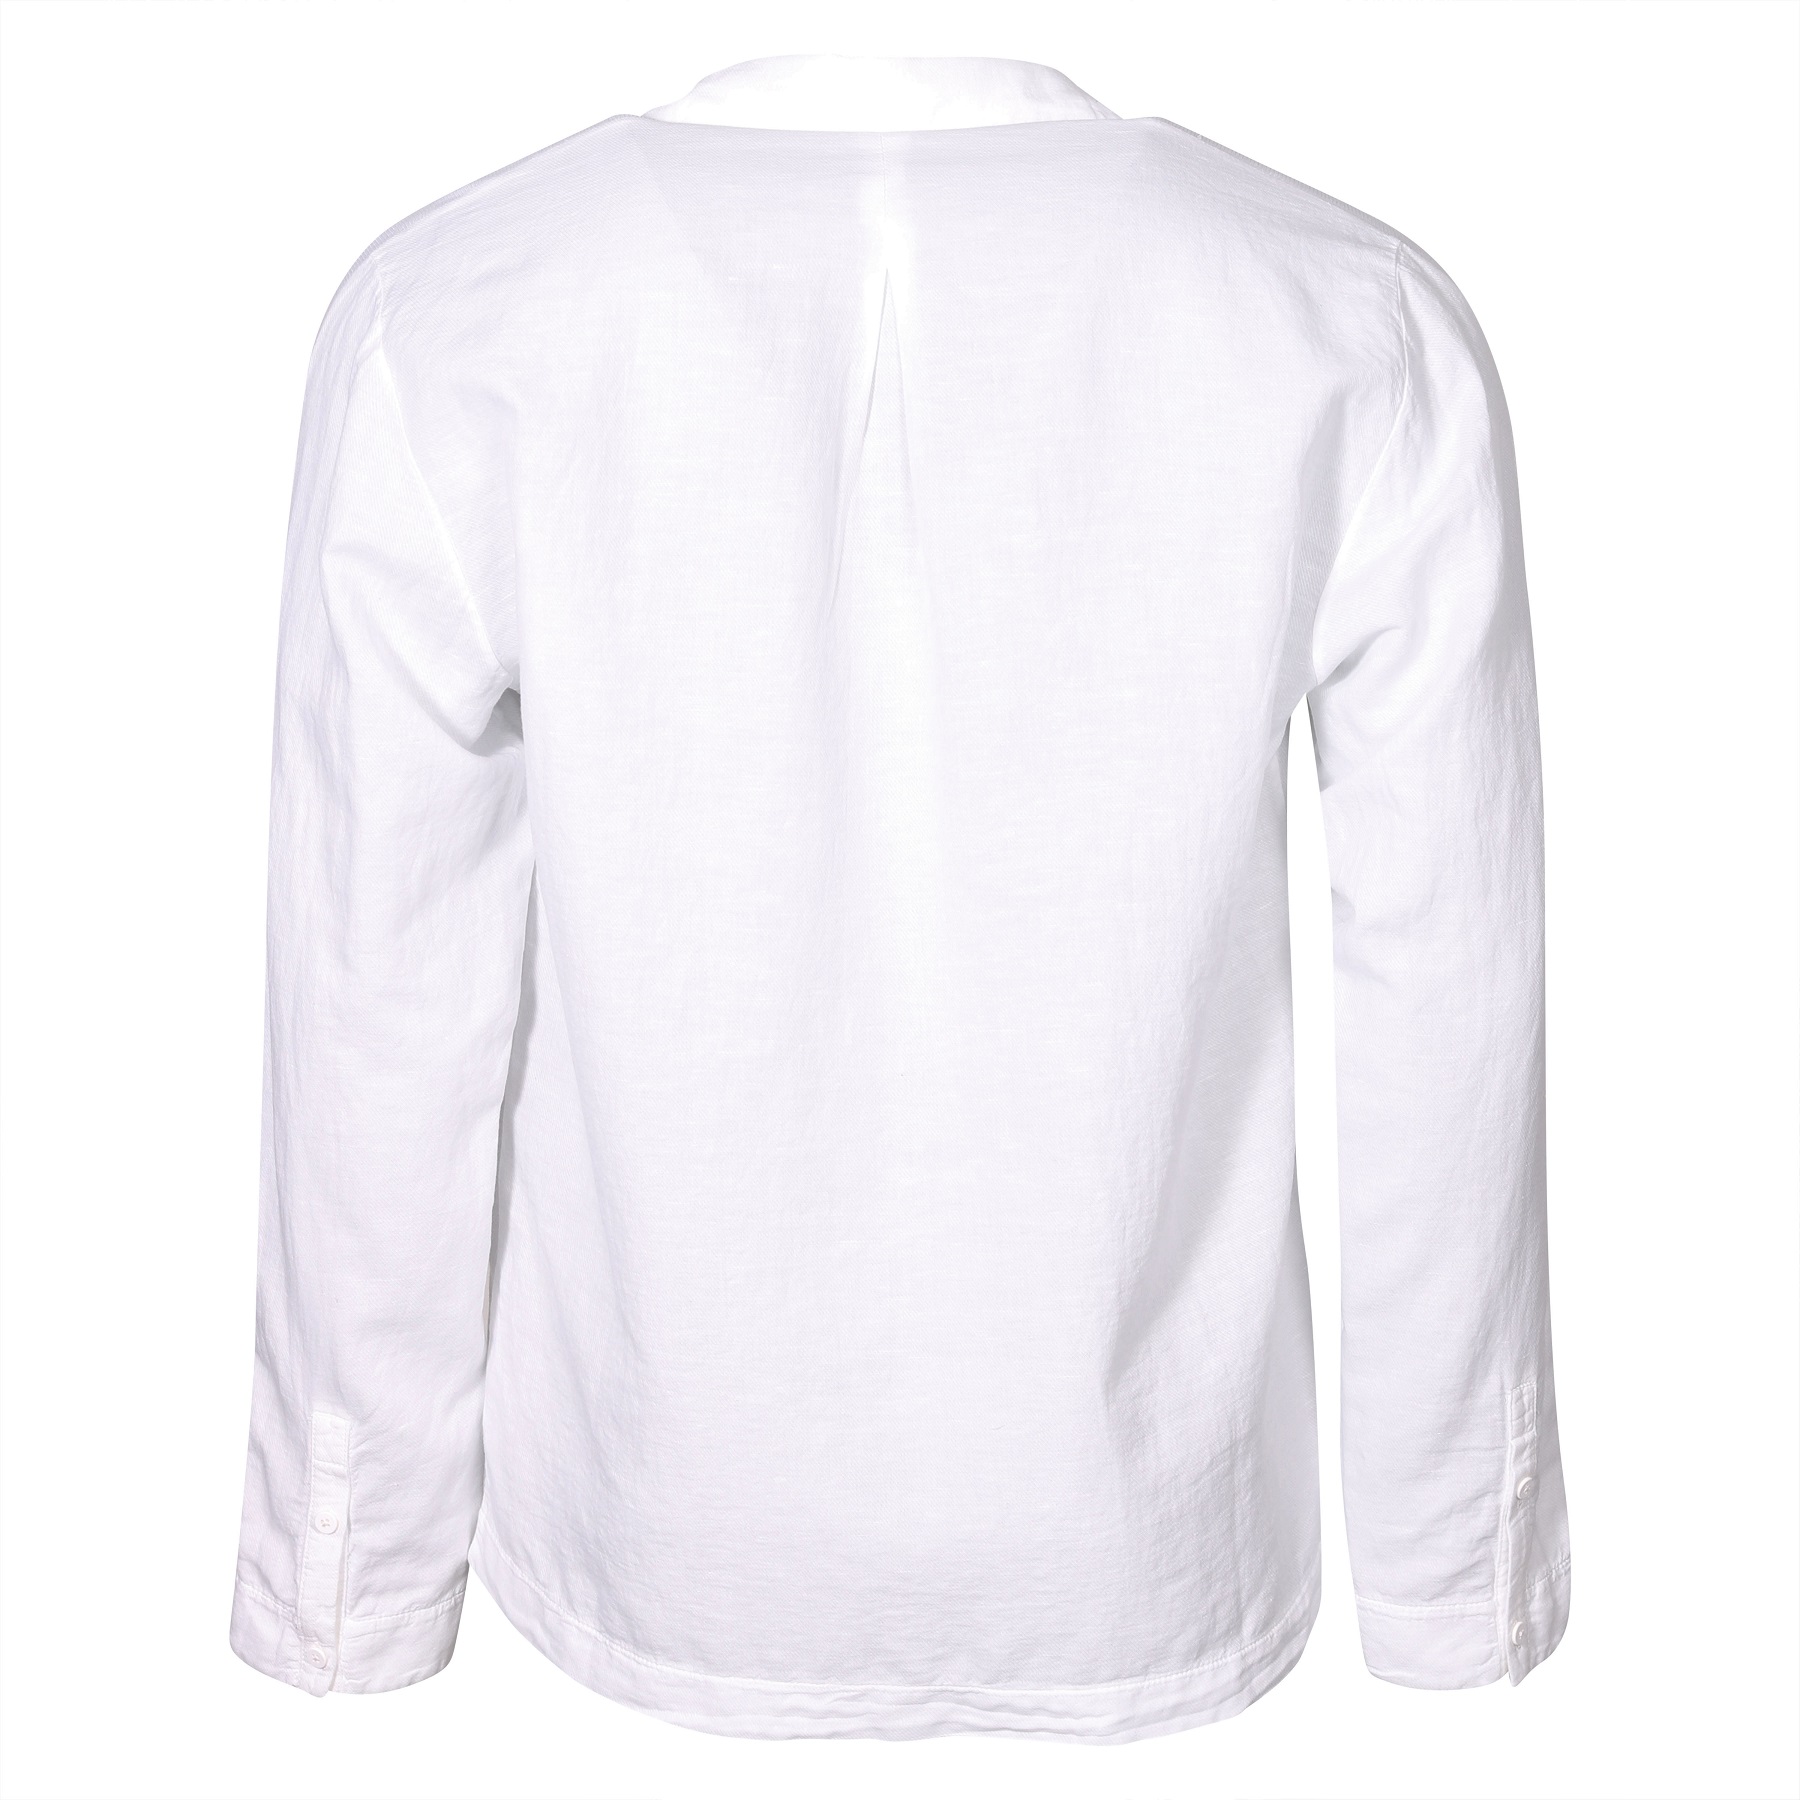 TRANSIT UOMO Cotton Linen Shirt in White 2XL